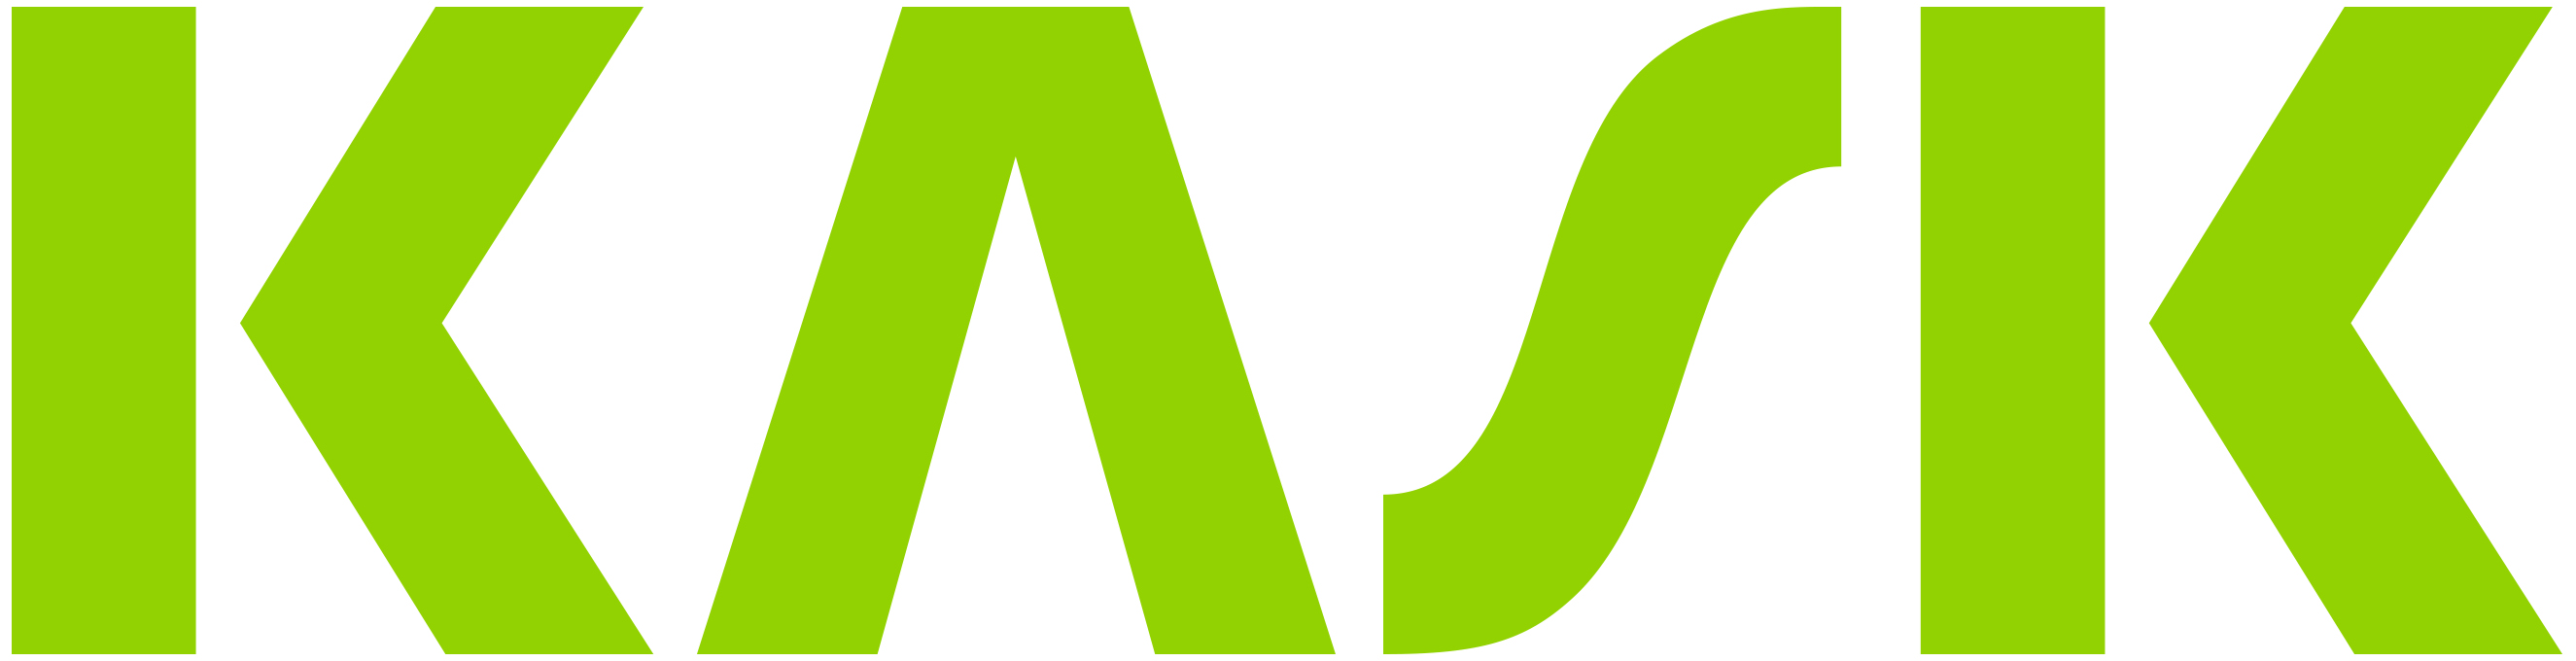 KASK logo lime